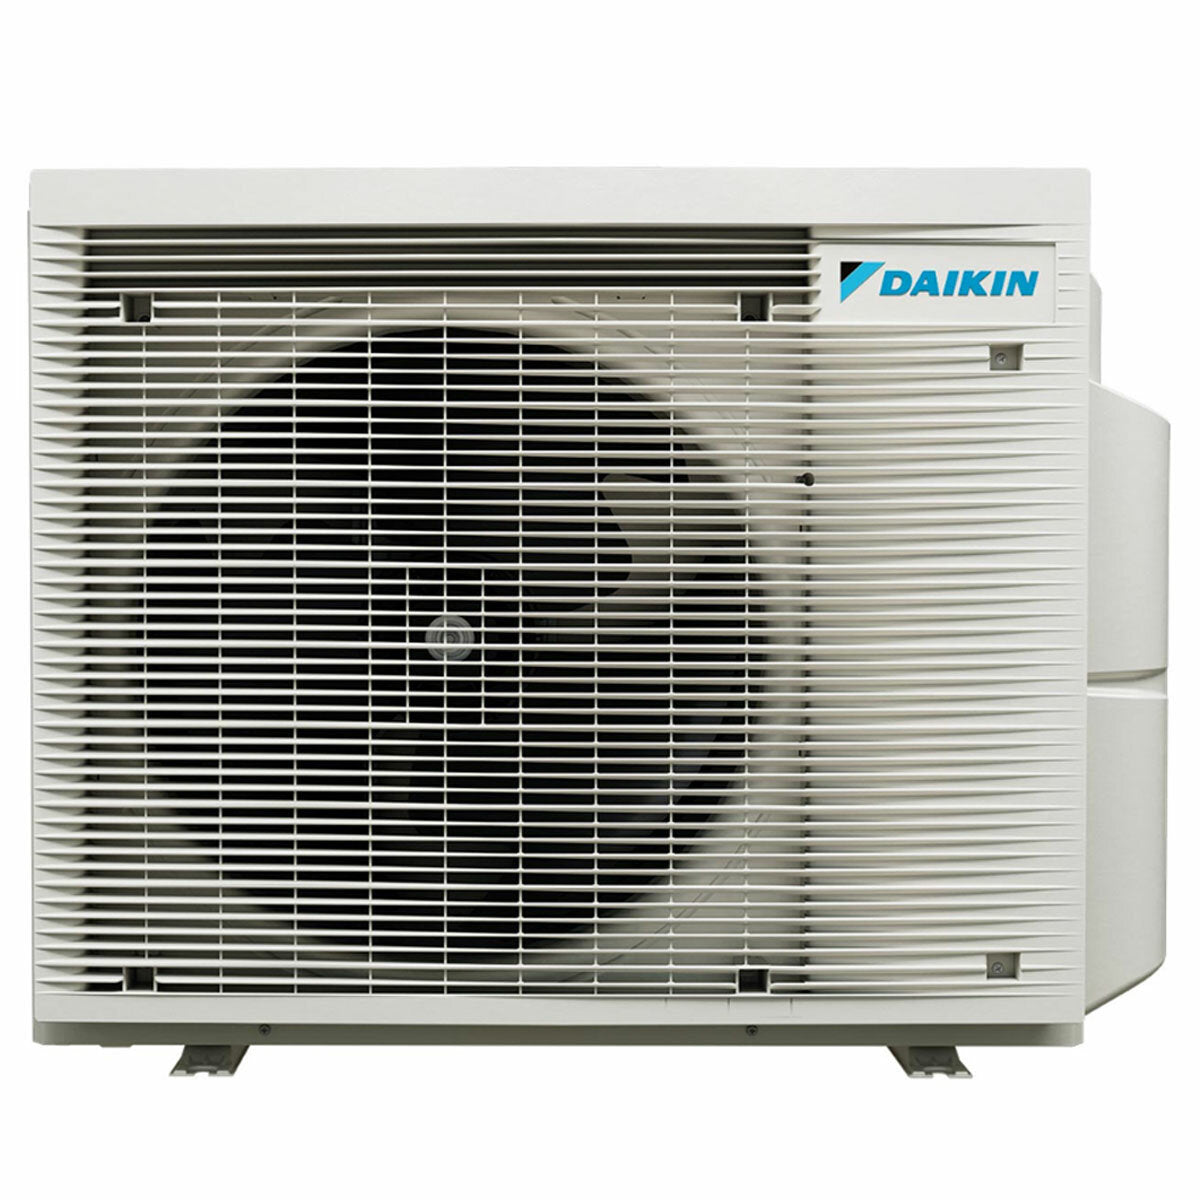 Daikin Emura 3 trial split air conditioner 12000+15000+18000 BTU inverter A+ wifi outdoor unit 7.4 kW Black